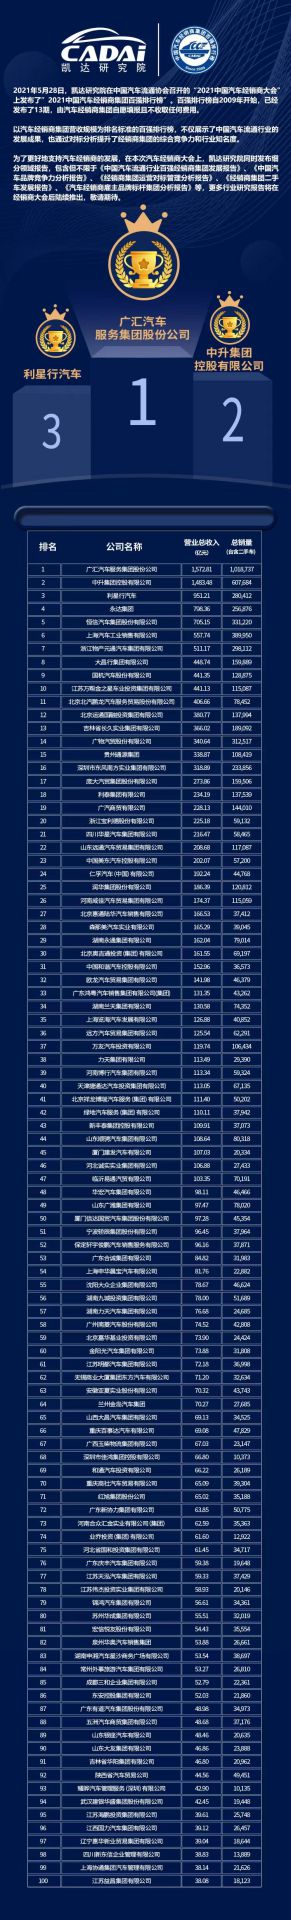 喜讯丨皇冠游戏(中国)有限公司官网荣登2021年中国汽车经销商百强排行榜第33位(图3)